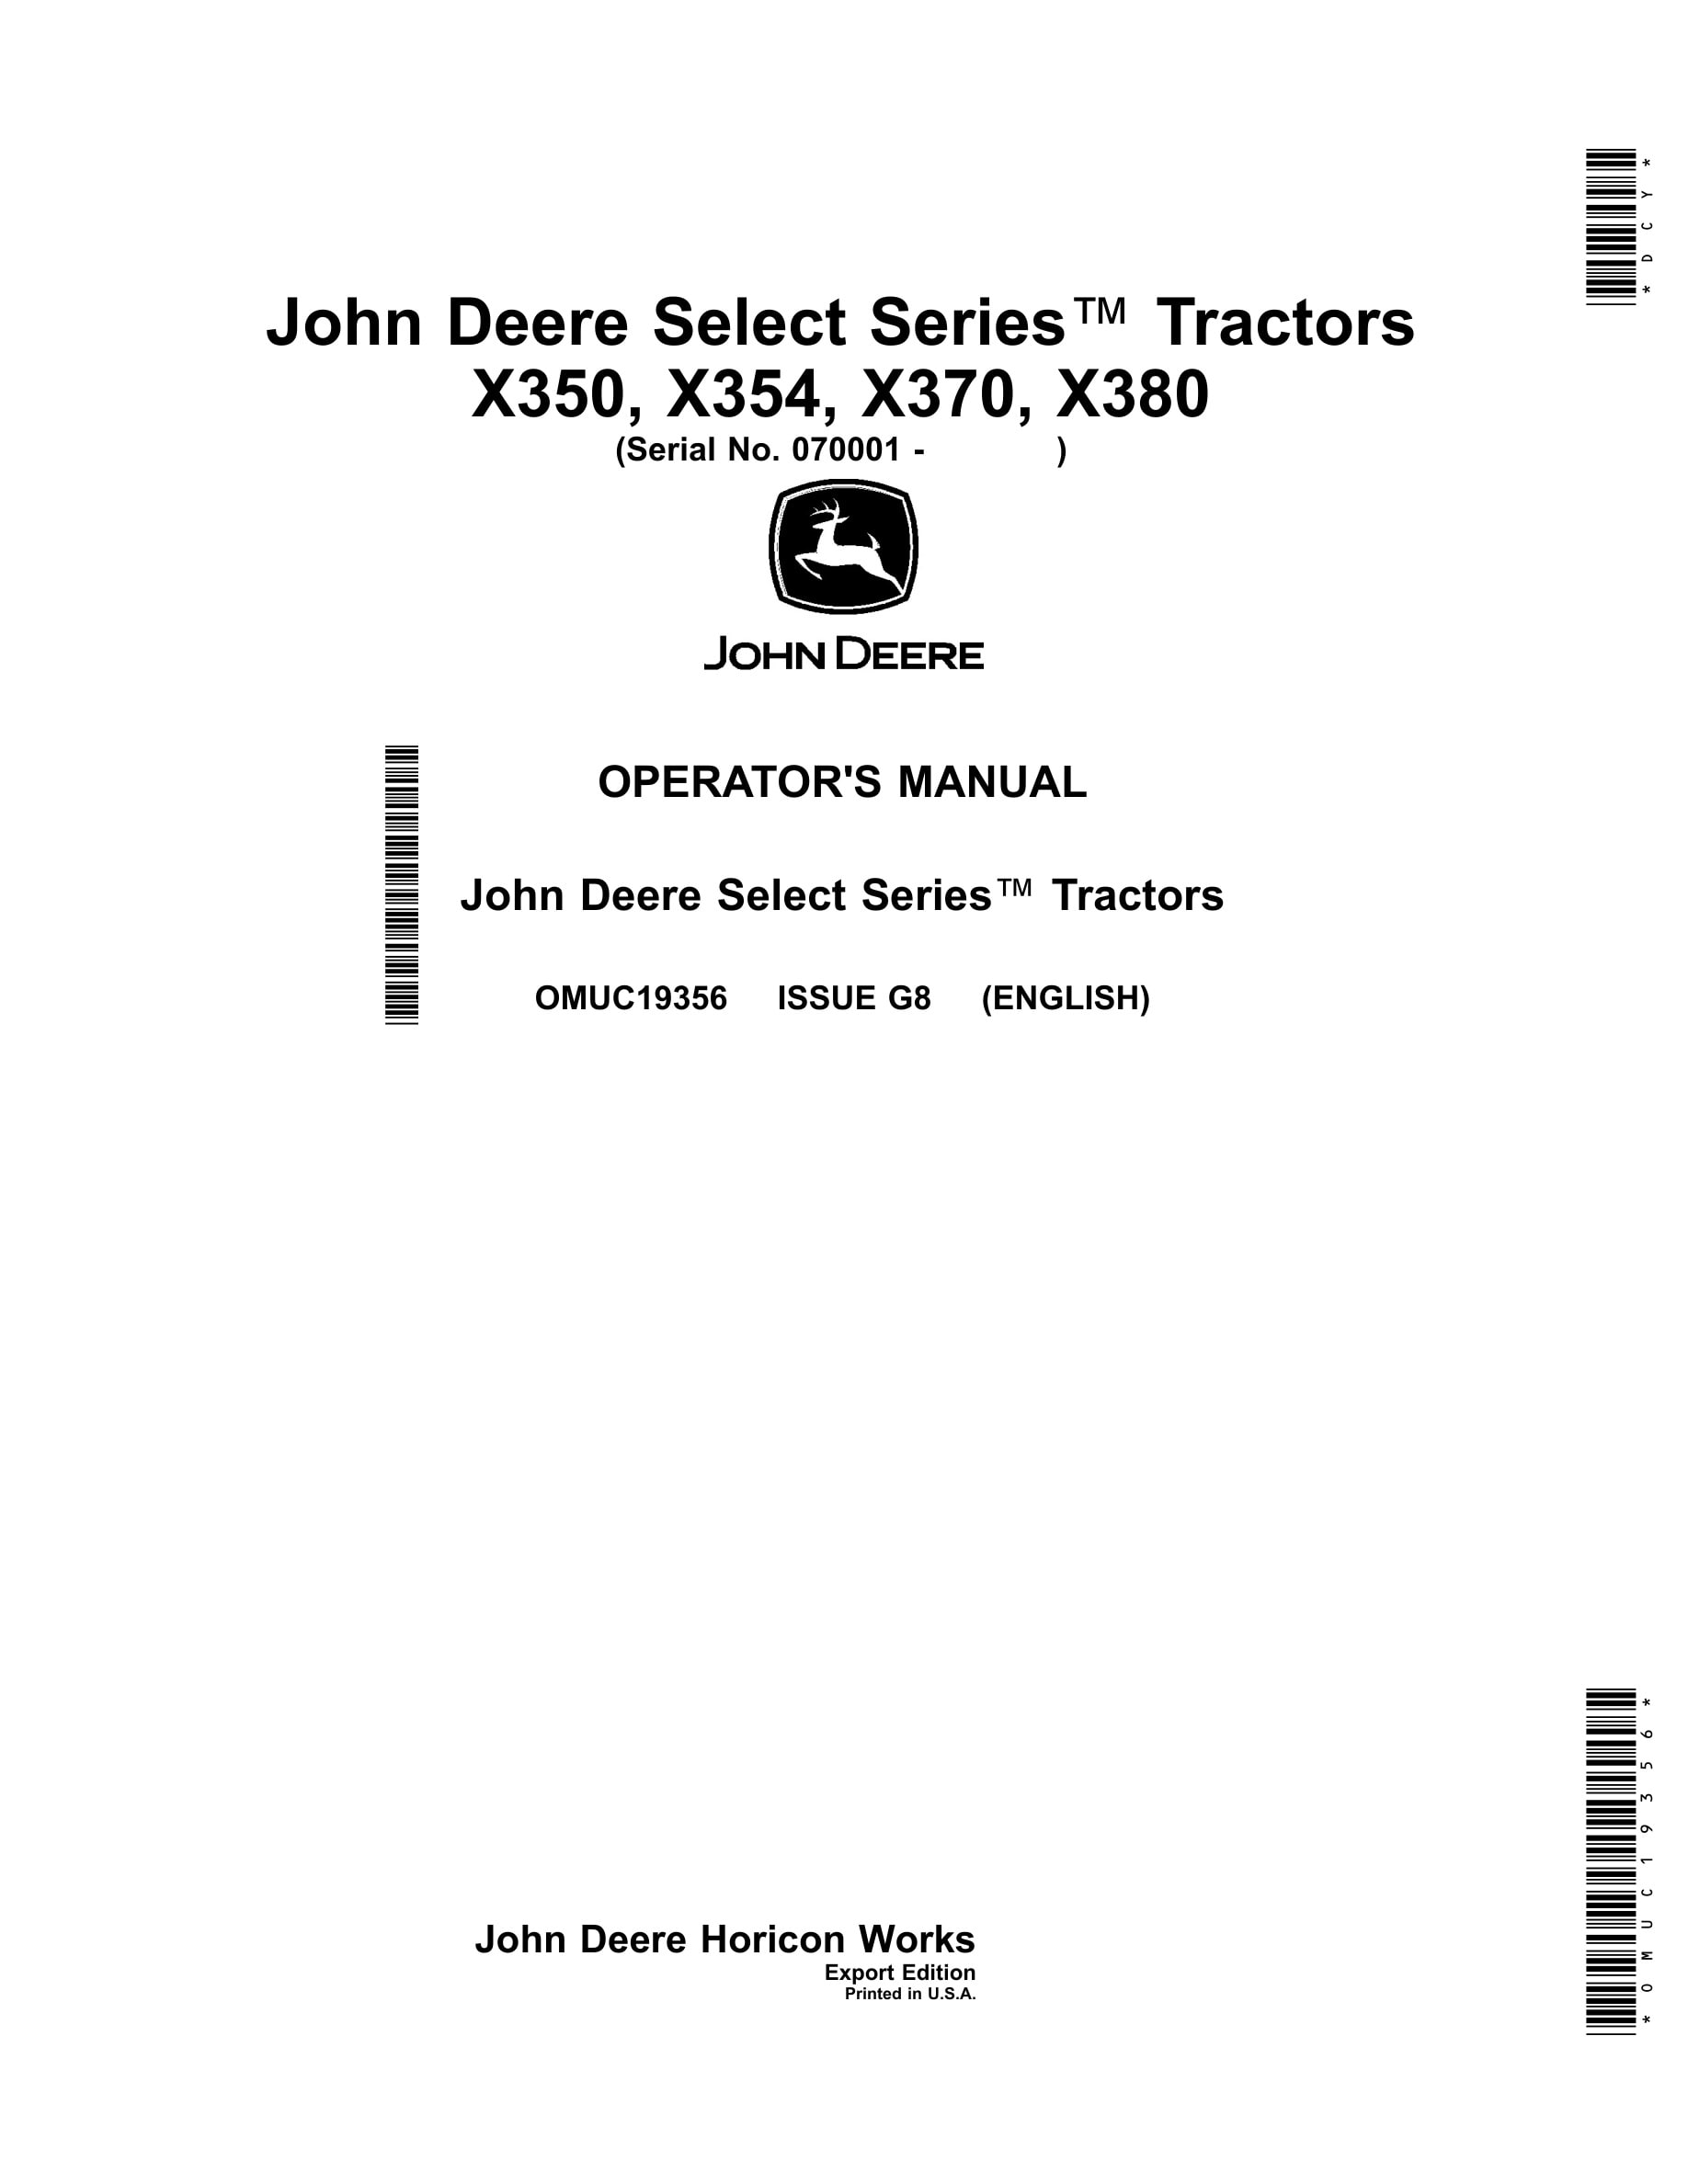 John Deere X350, X354, X370, X380 Tractors Operator Manuals OMUC19356-1